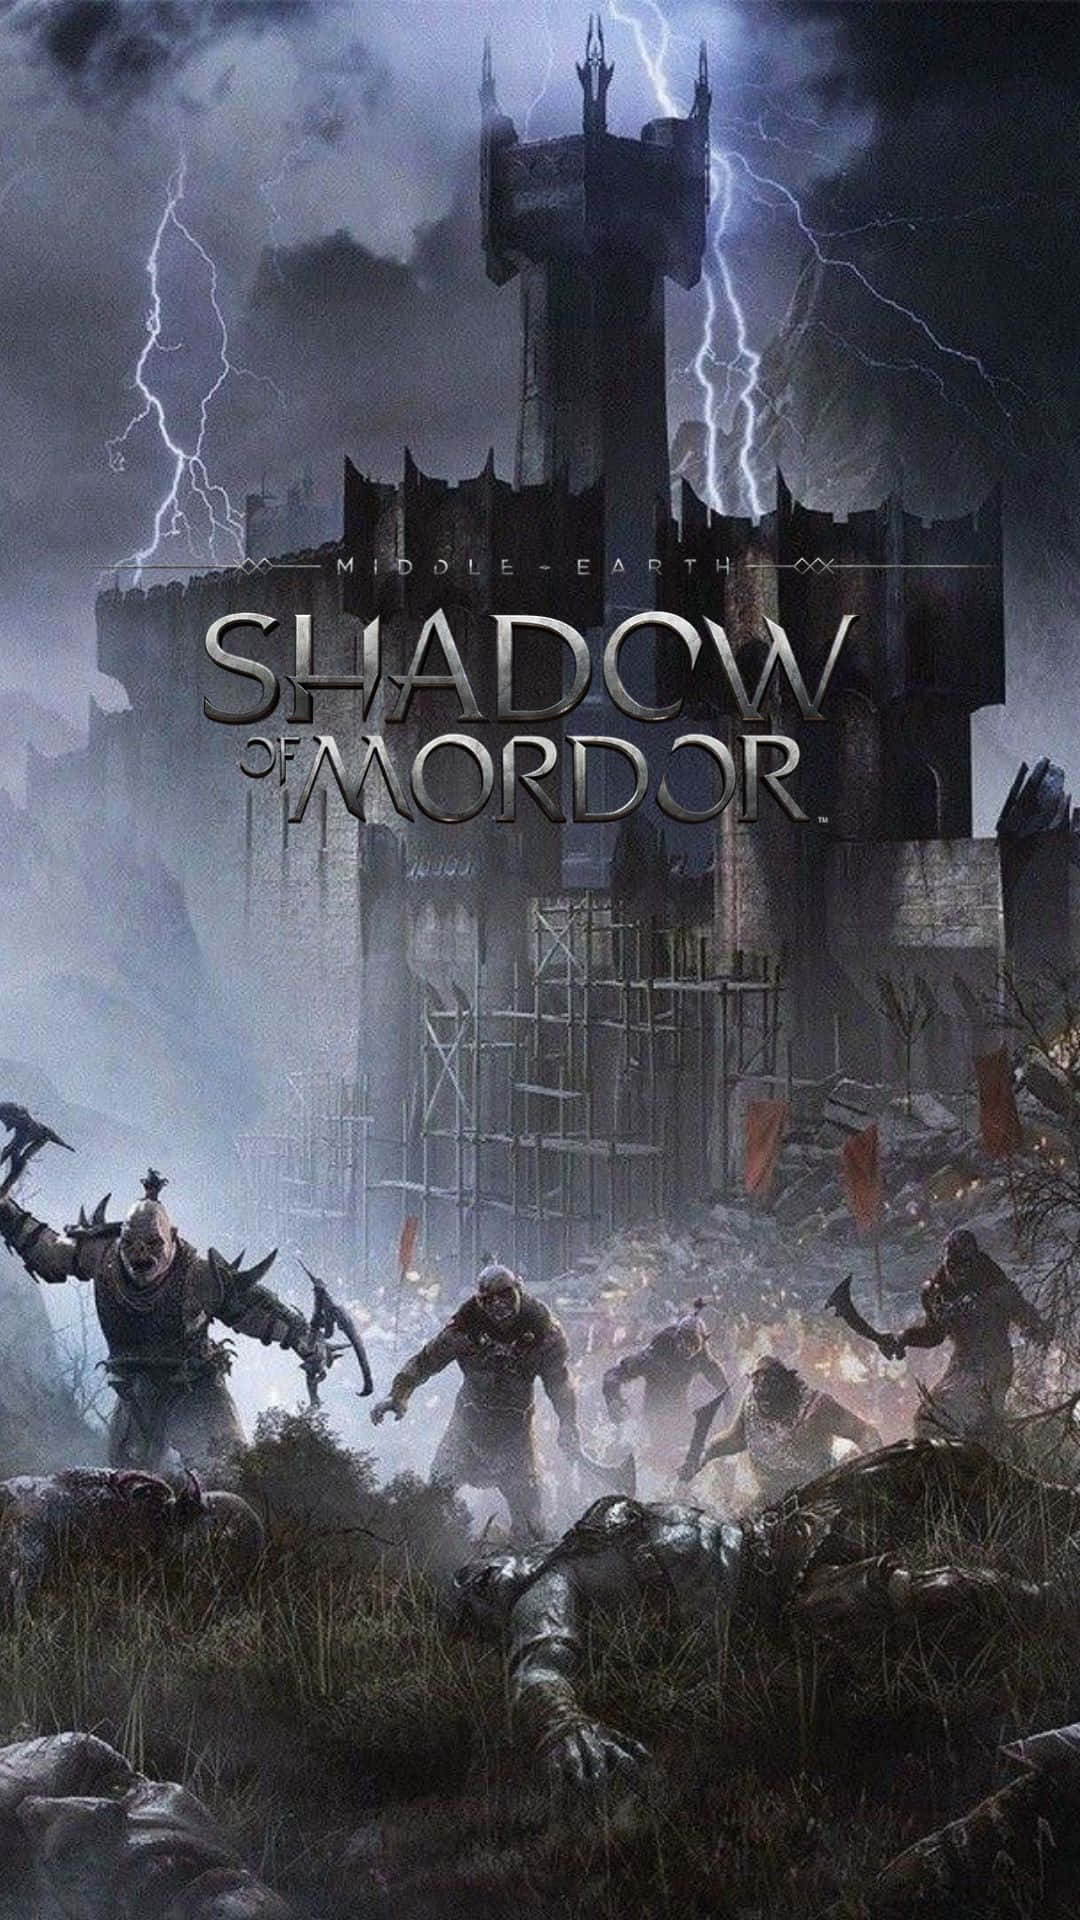 Affrontala Grande Epica Storia Di Mezza Terra Con Android Shadow Of Mordor.